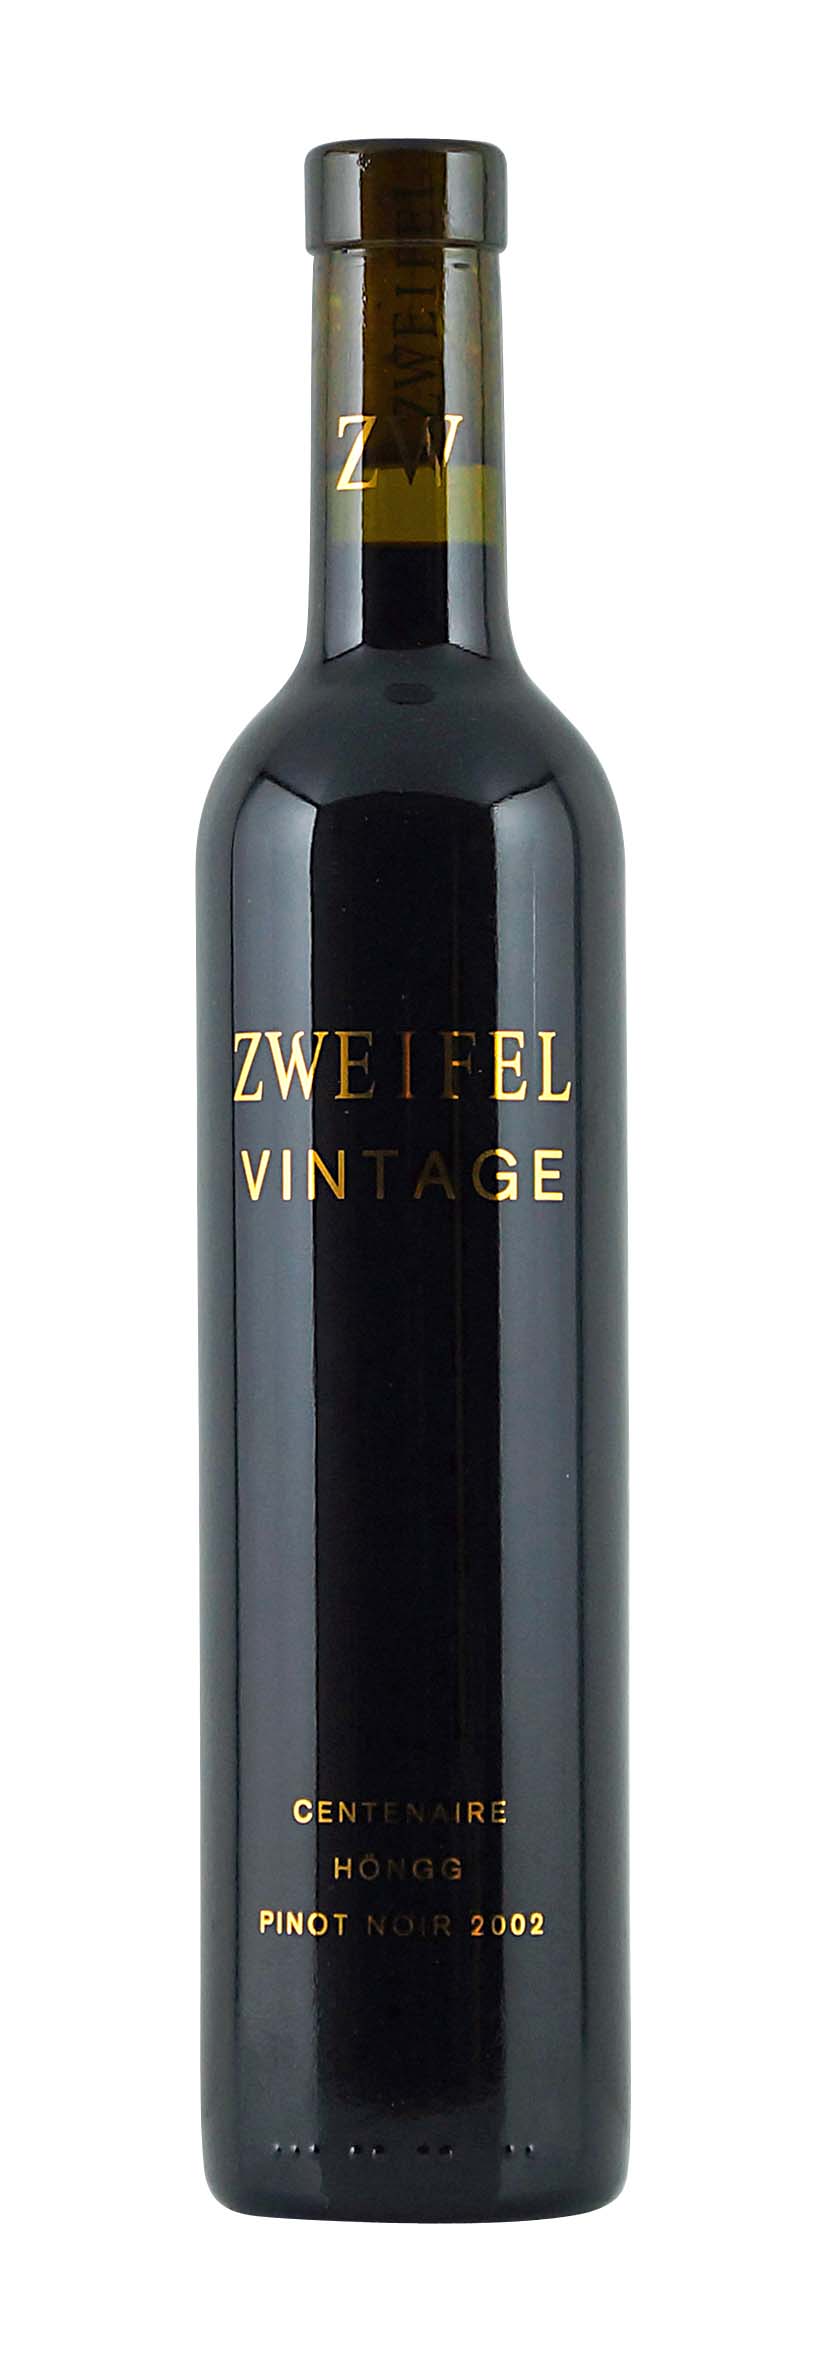 CH- Vintage Centenaire Pinot Noir 2002